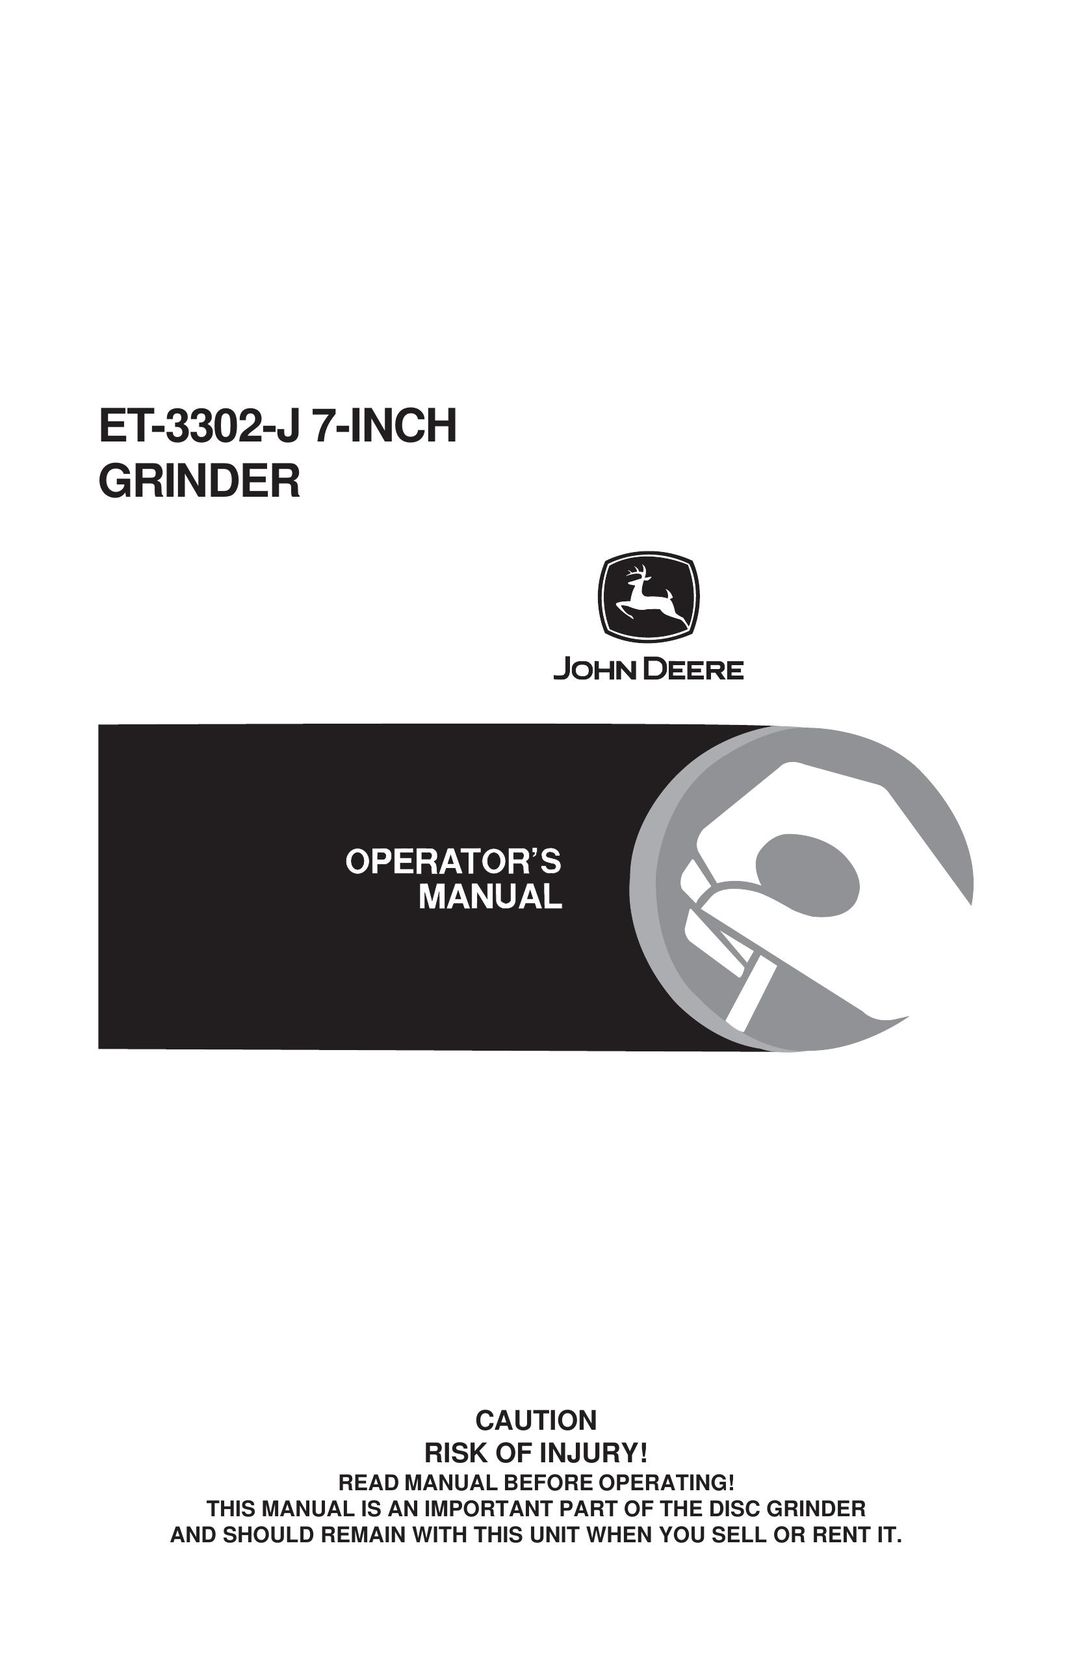 John Deere ET-3302-J Grinder User Manual